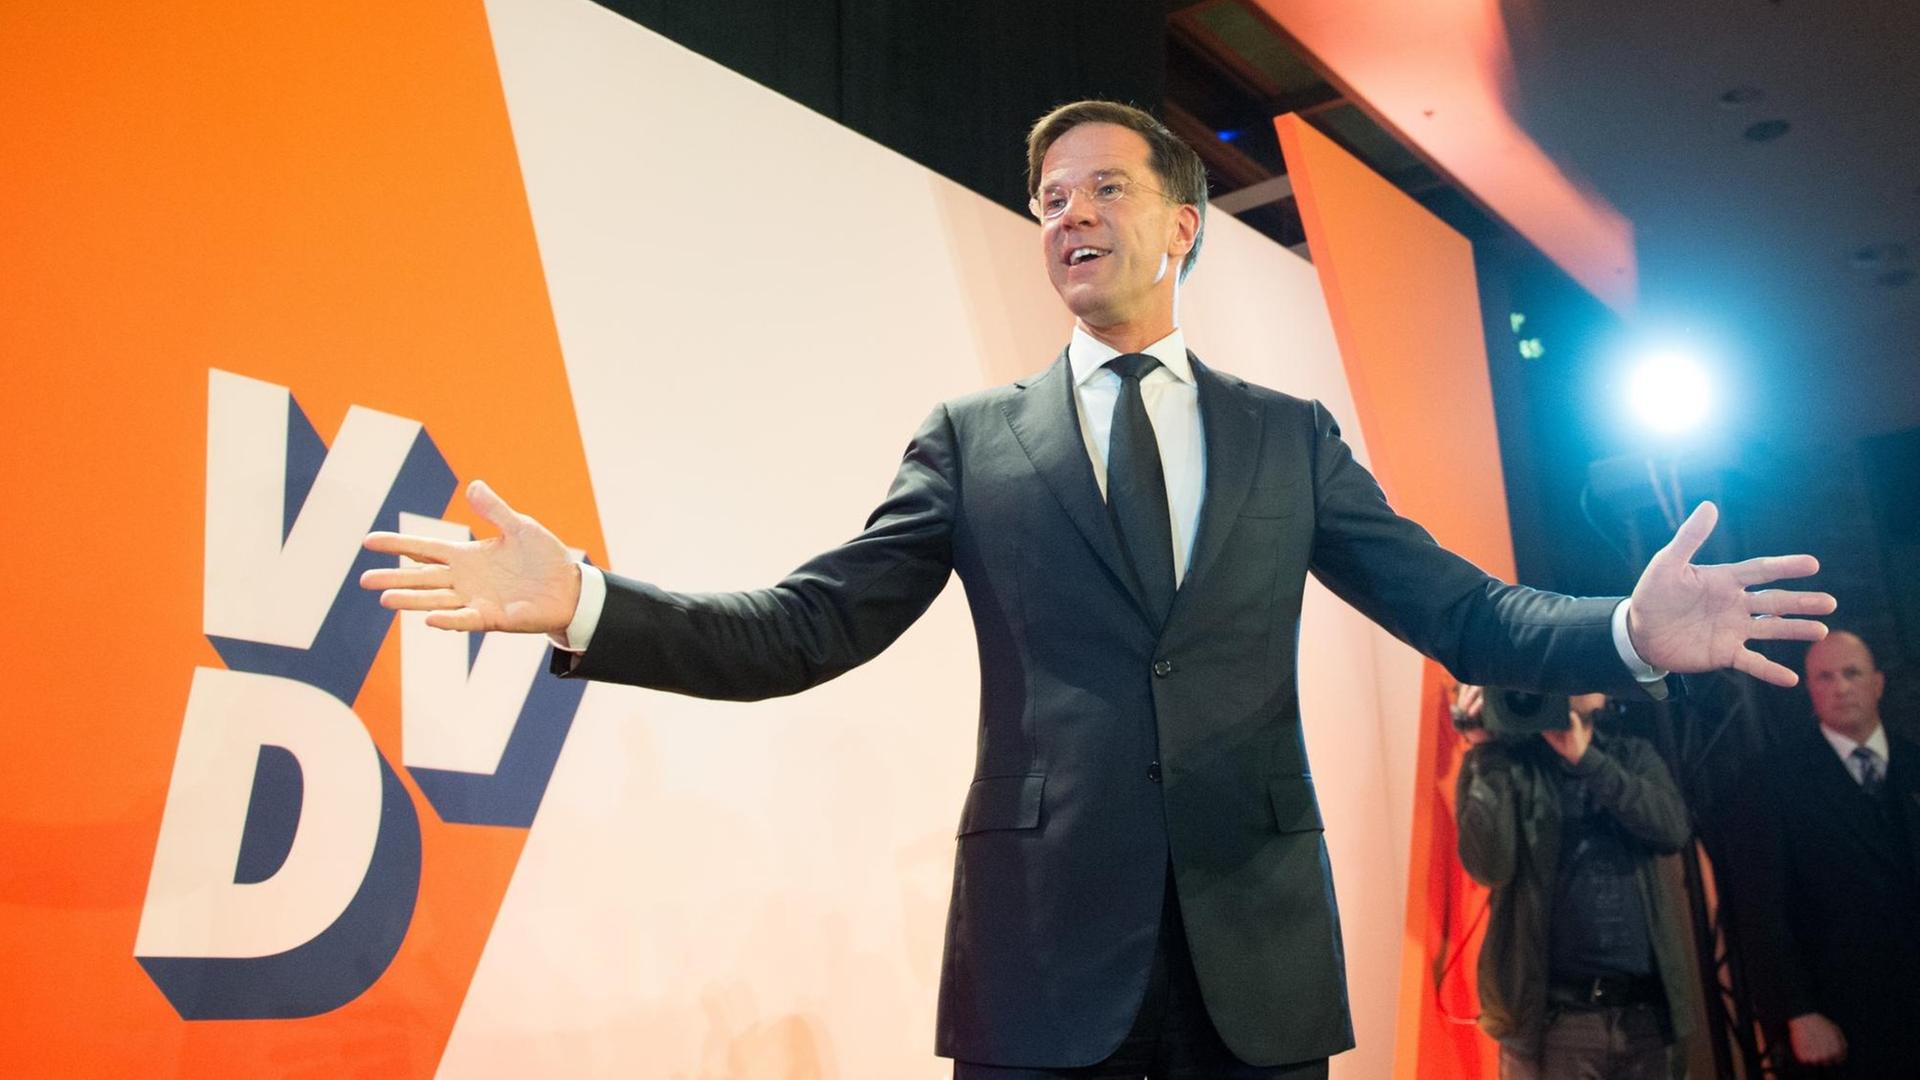 Mark Rutte steht vor einer Wand mit dem Parteilogo der VVD und breitet beide Arme aus.